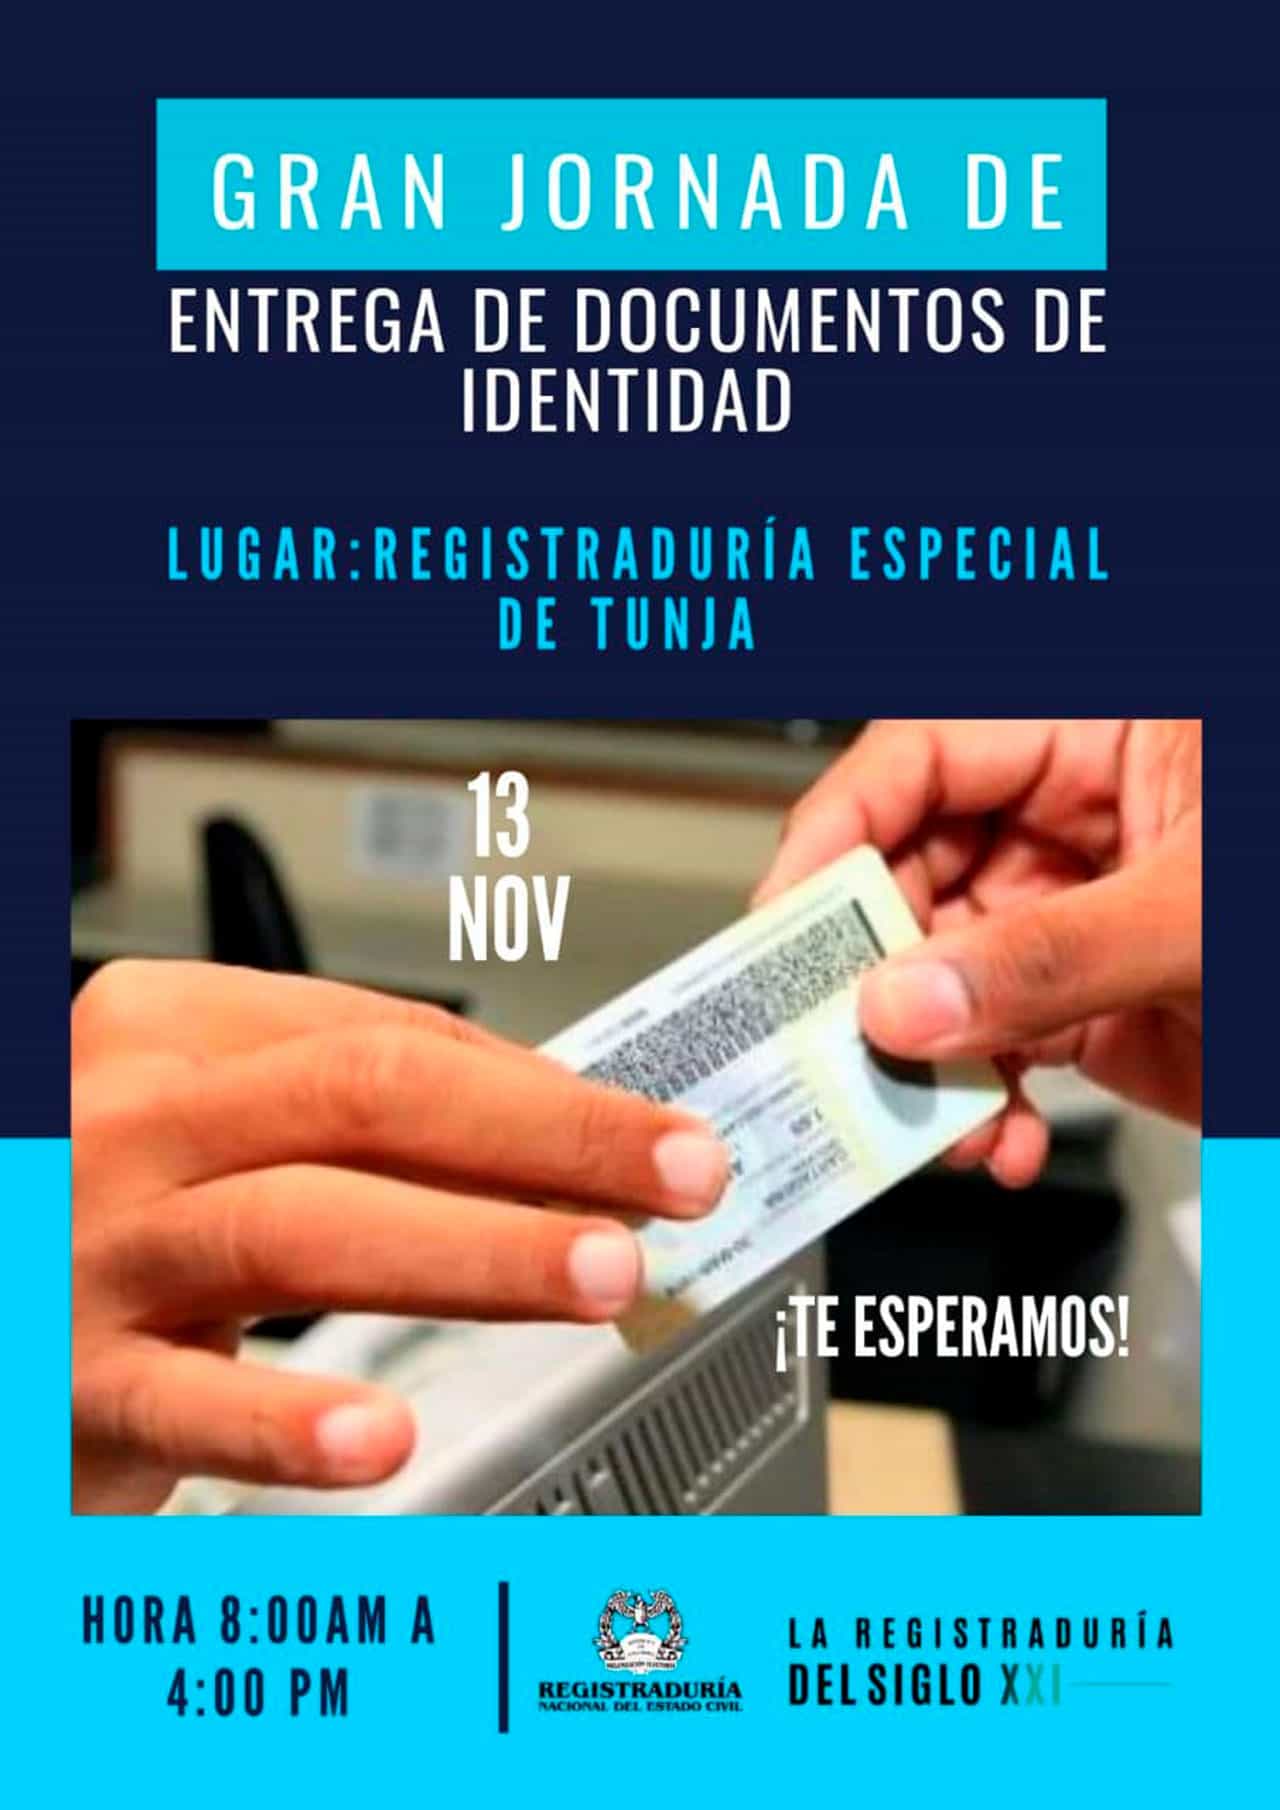 Hoy, durante todo el día, jornada especial de entrega de documentos en la Registraduría de Tunja 1